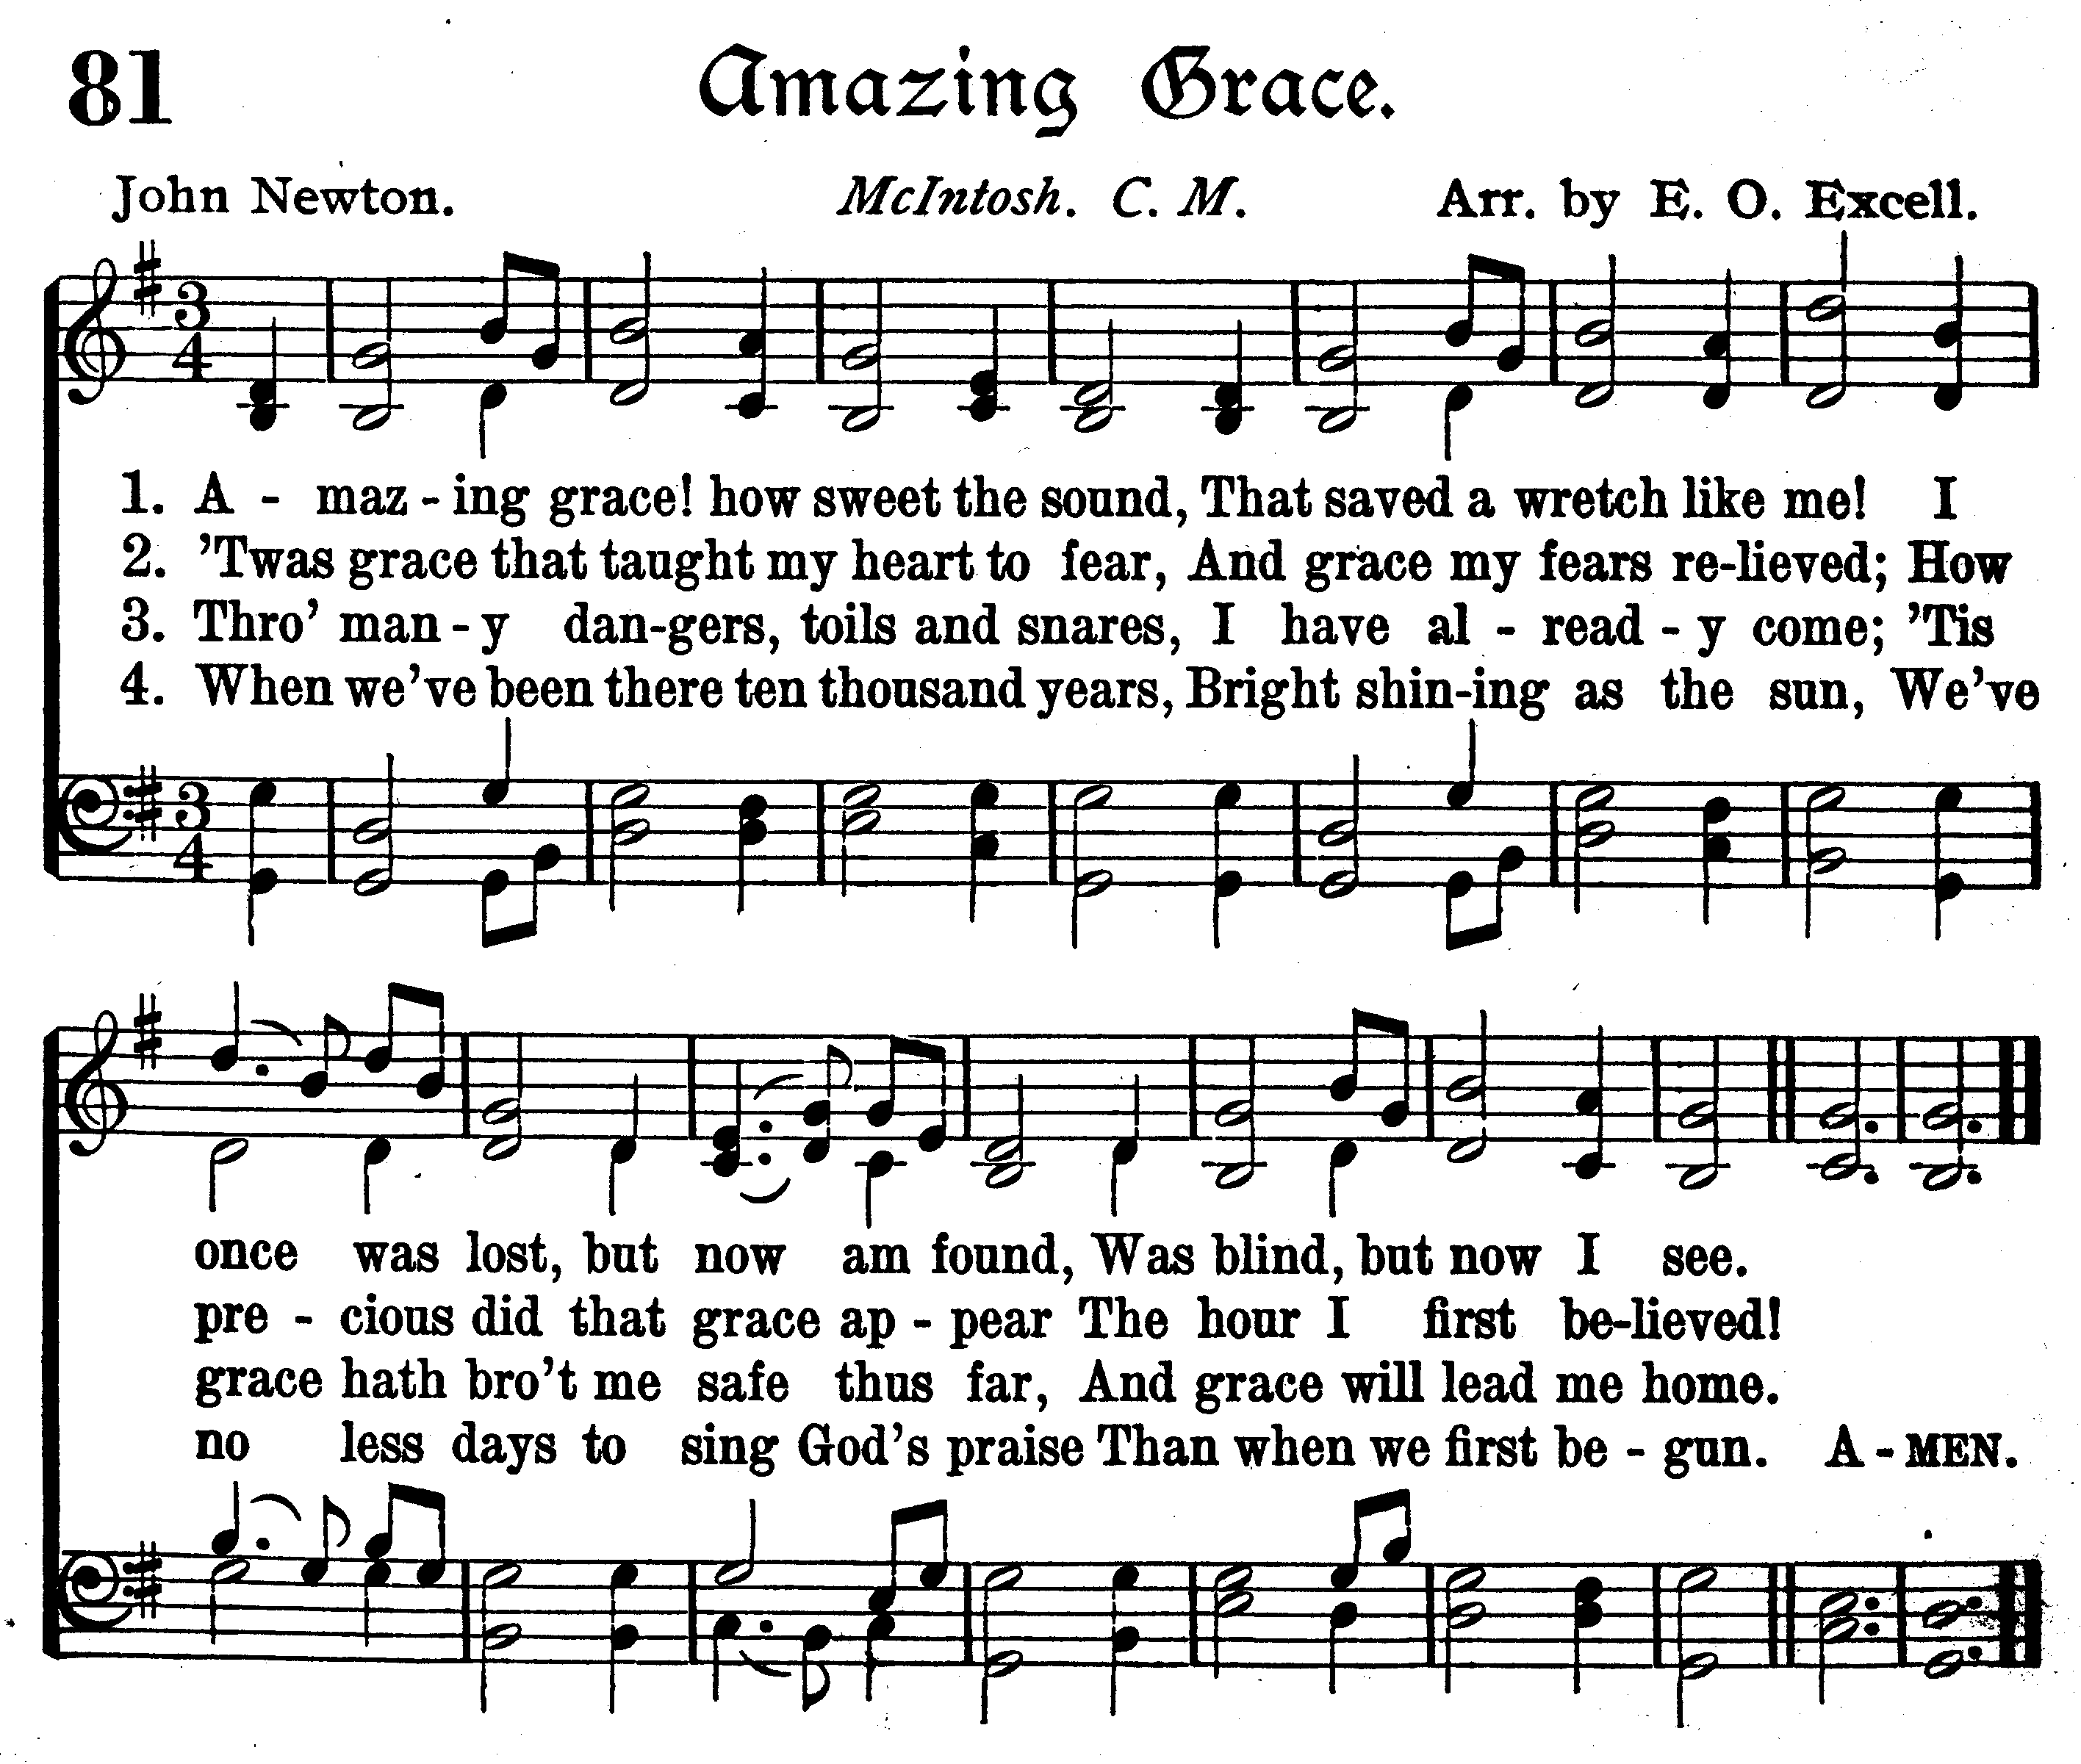 5 Best Images of Amazing Grace Lyrics Printable Amazing Grace Song